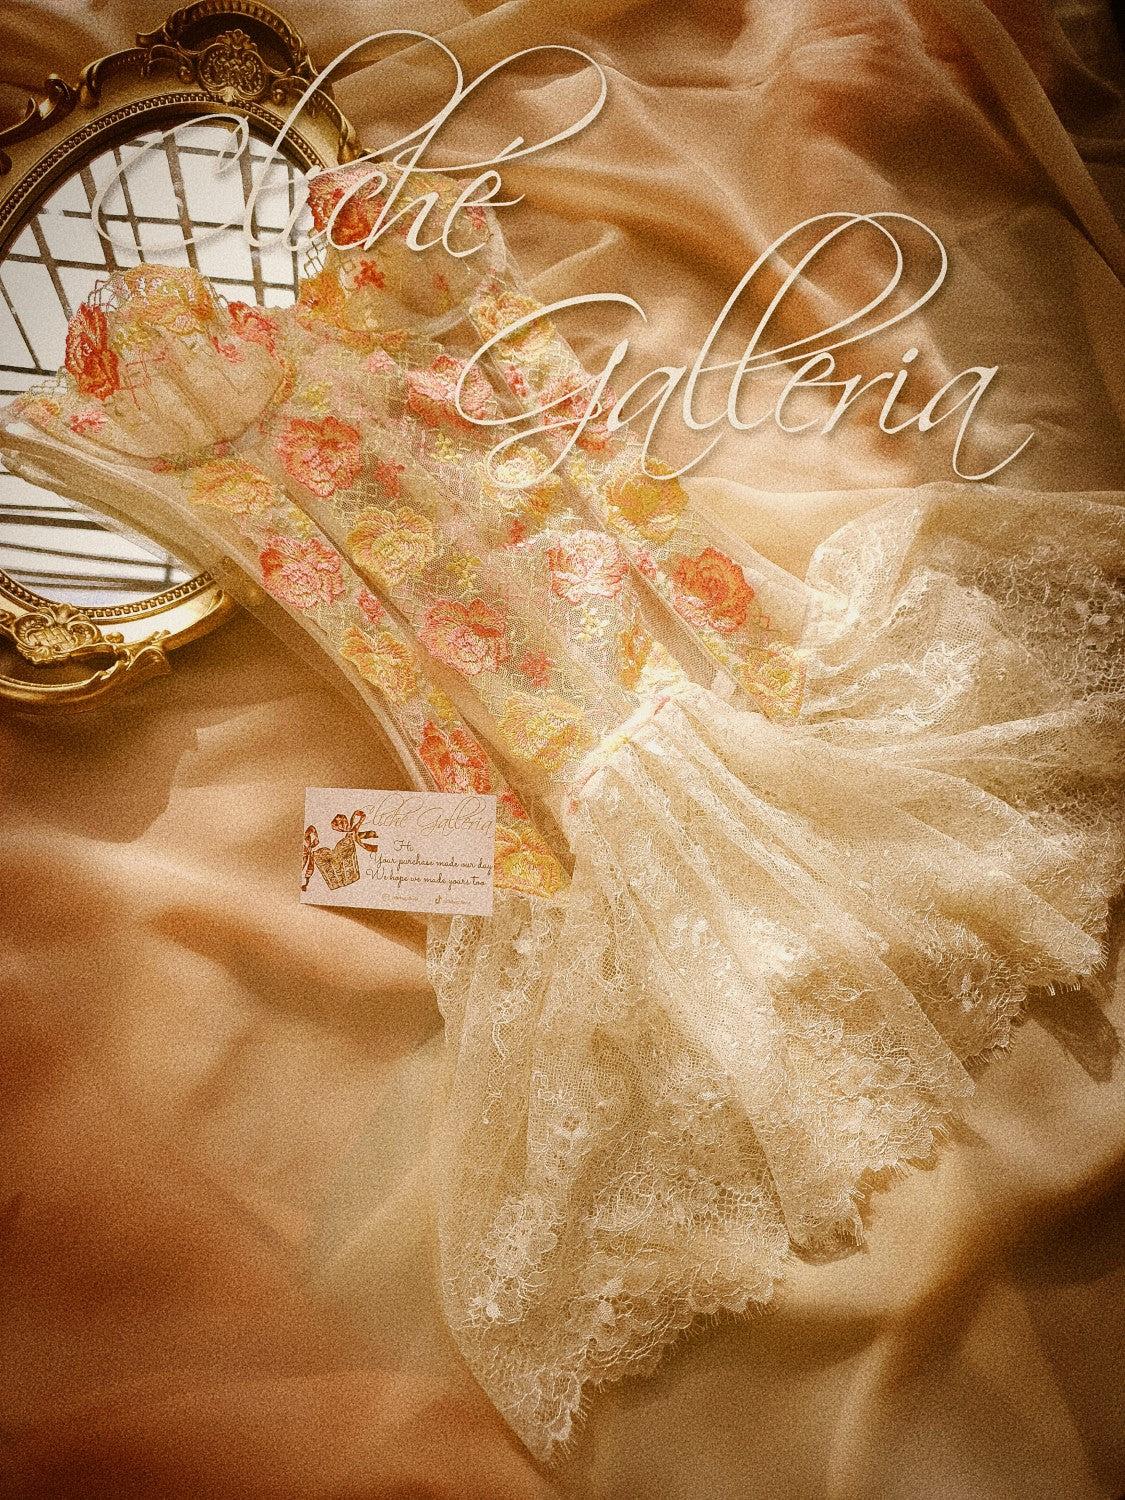 Félicette - Butter Rose Lace Bustier Dress